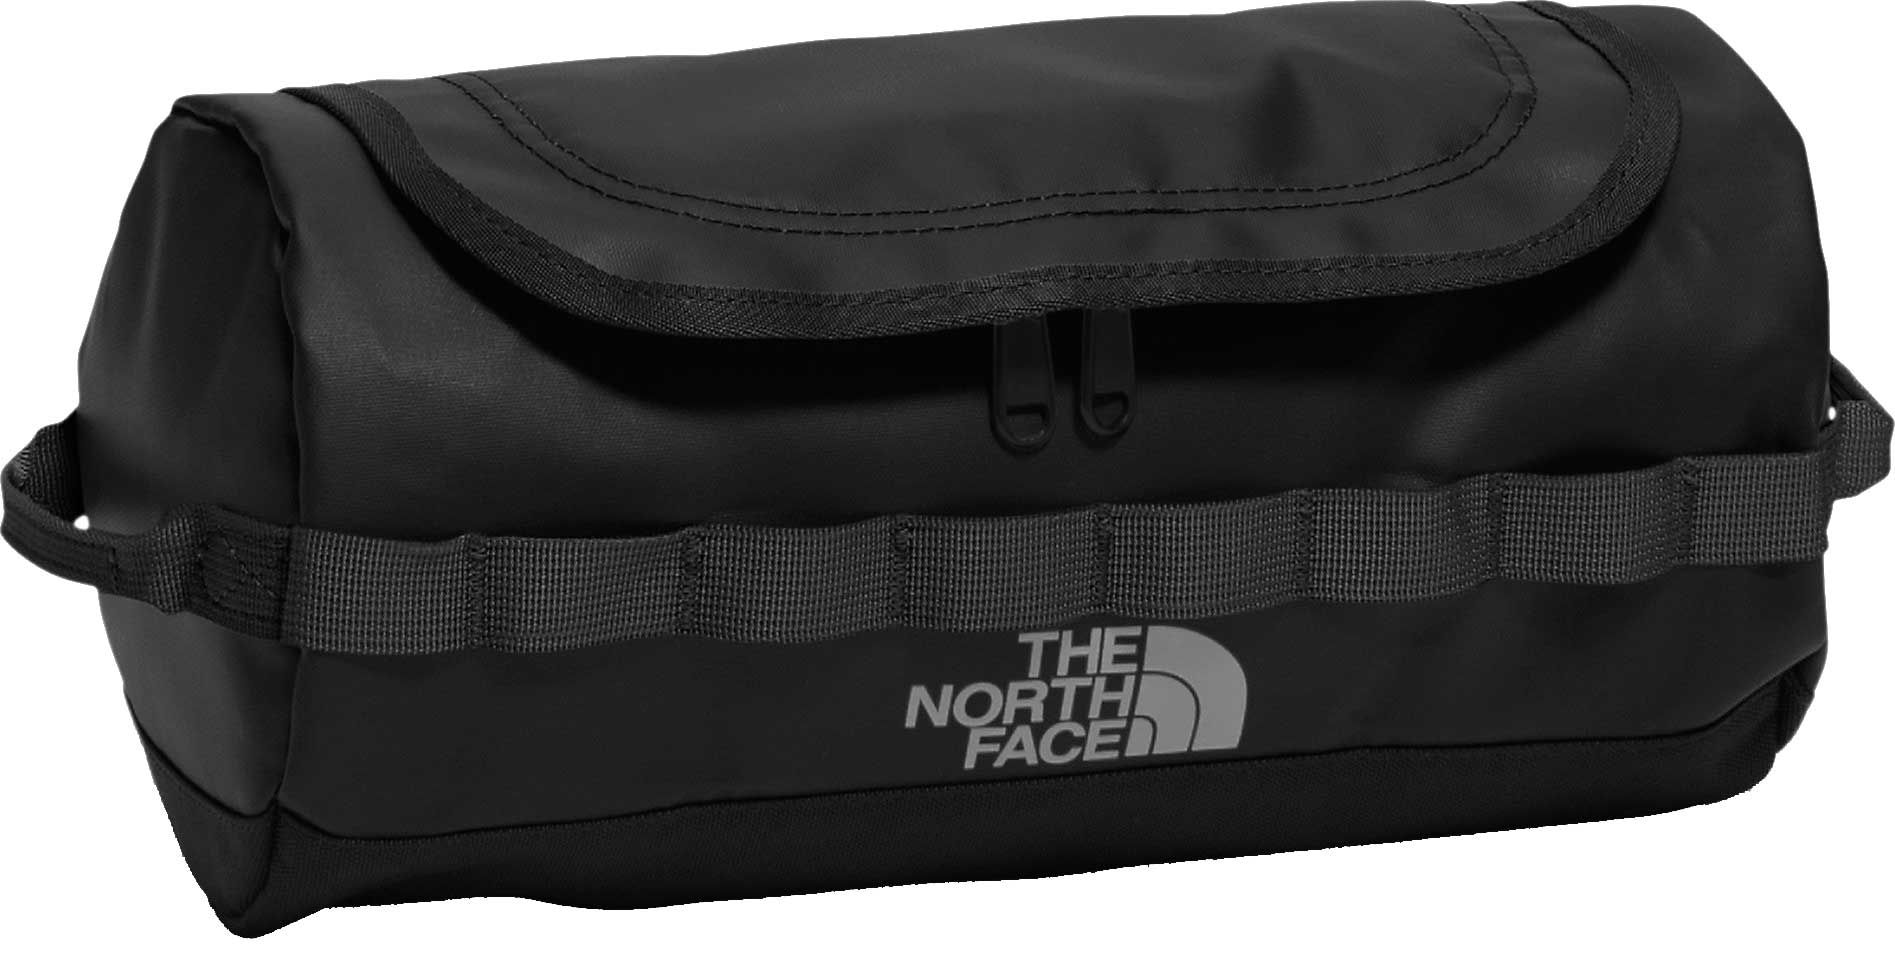 the north face dopp kit